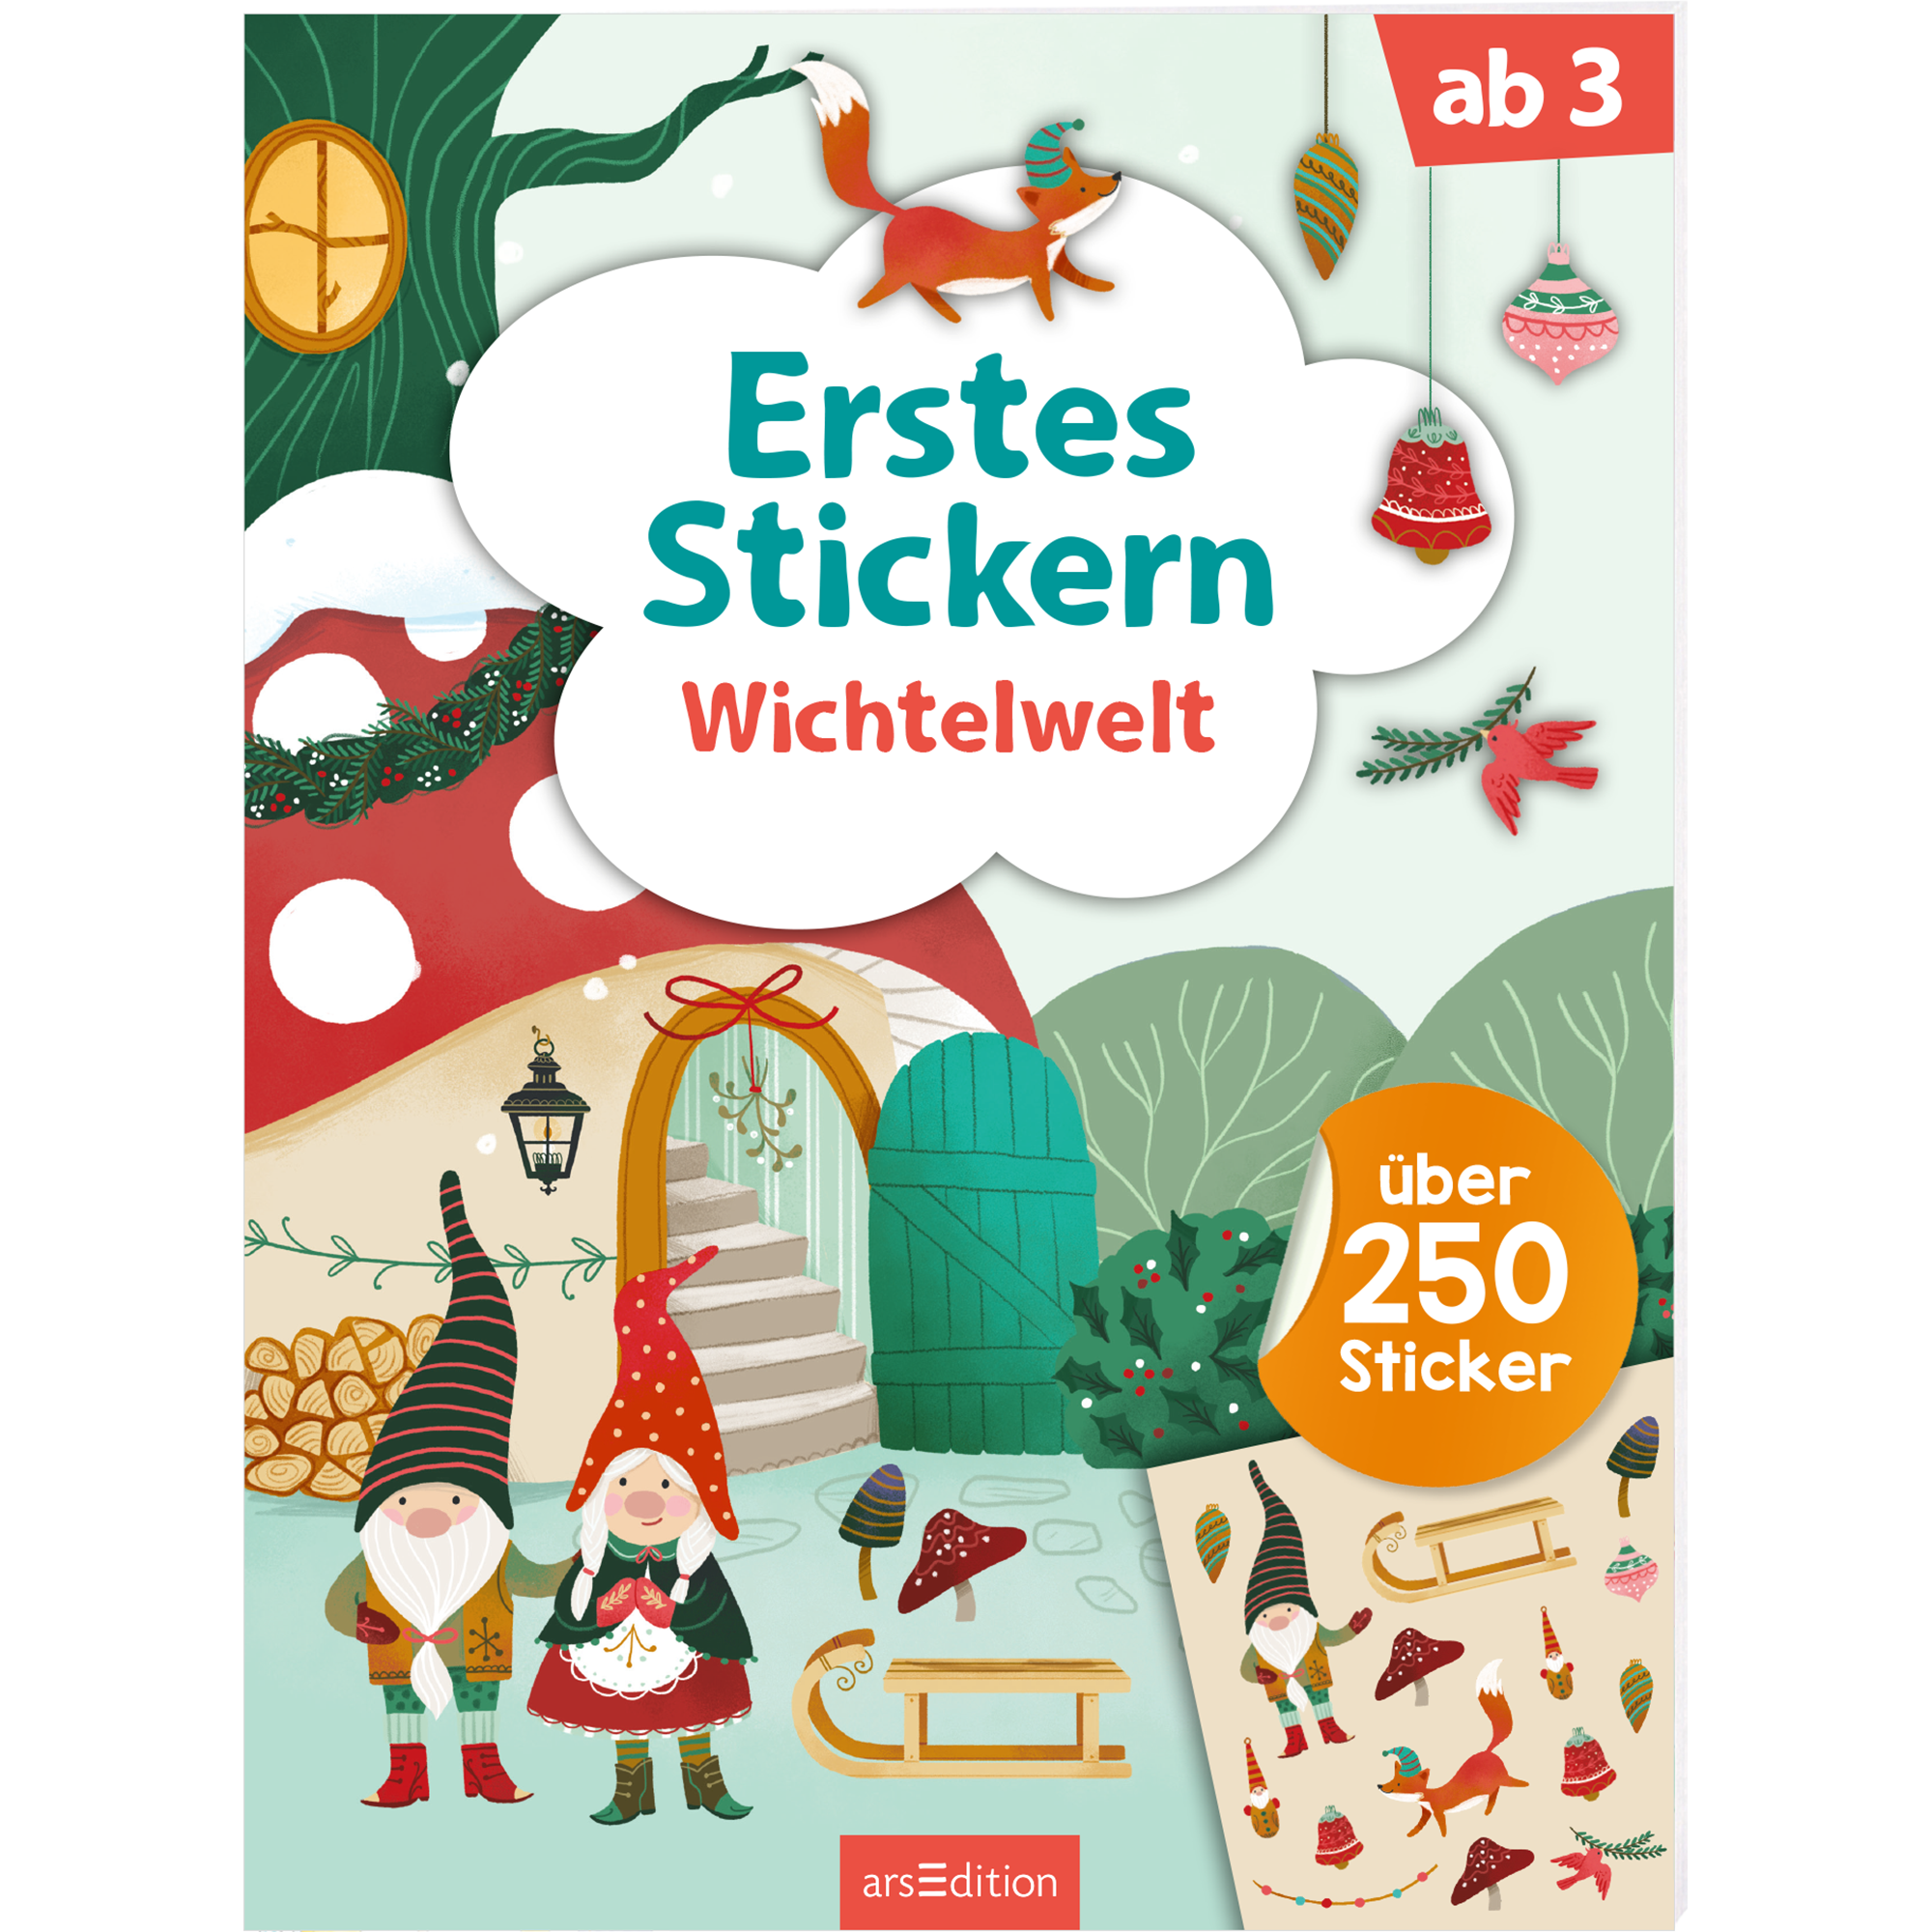 Erstes Stickern – Wichtelwelt arsEdition 2000585735203 1